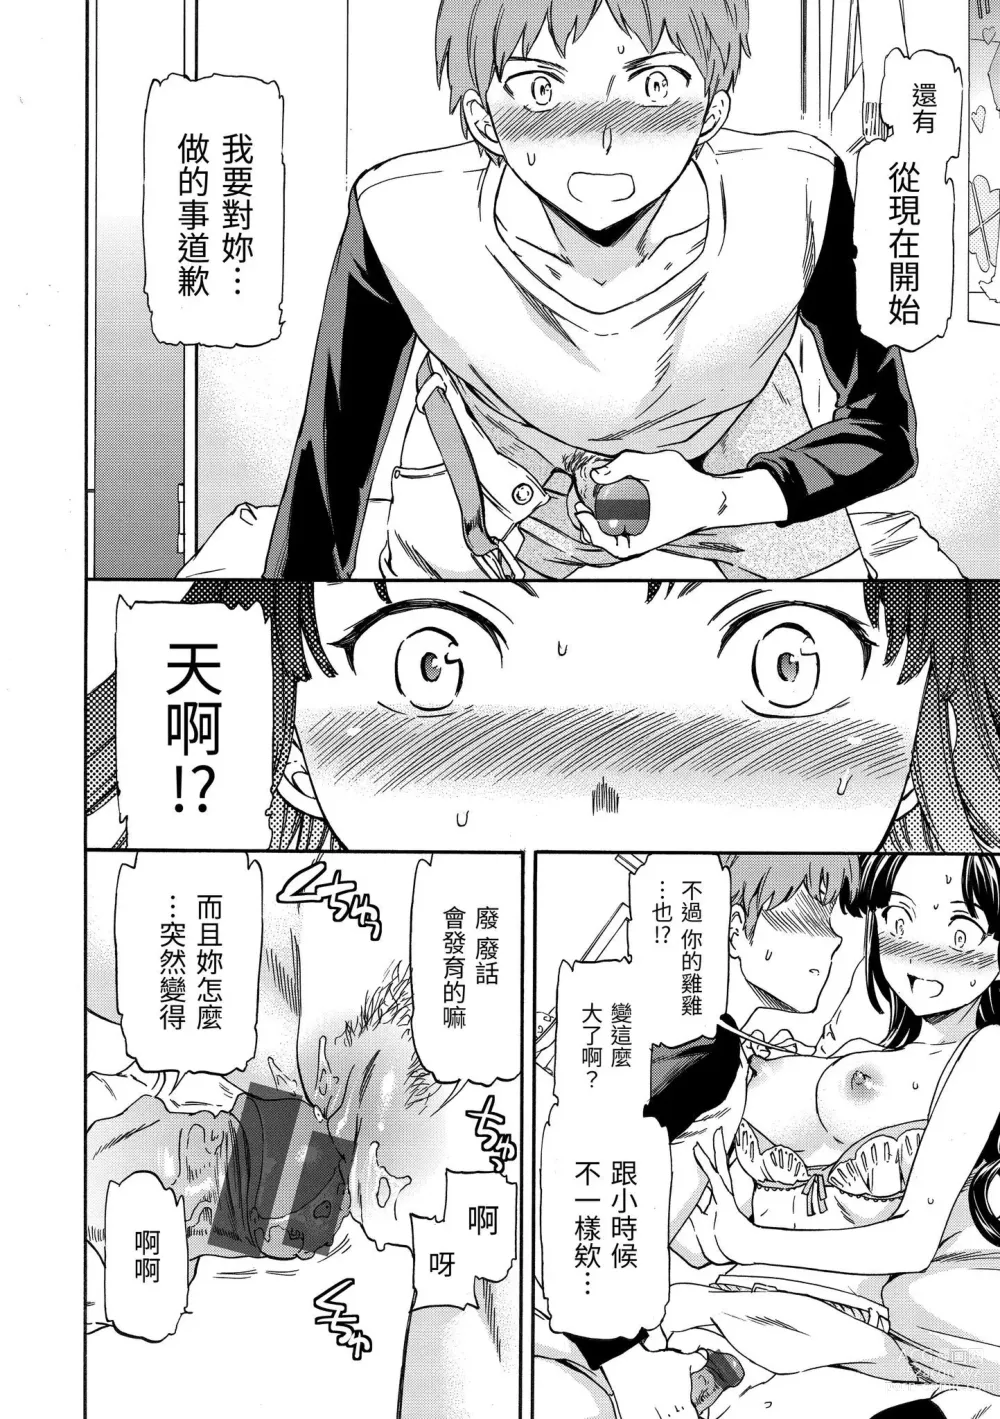 Page 207 of manga 柔情泥濘